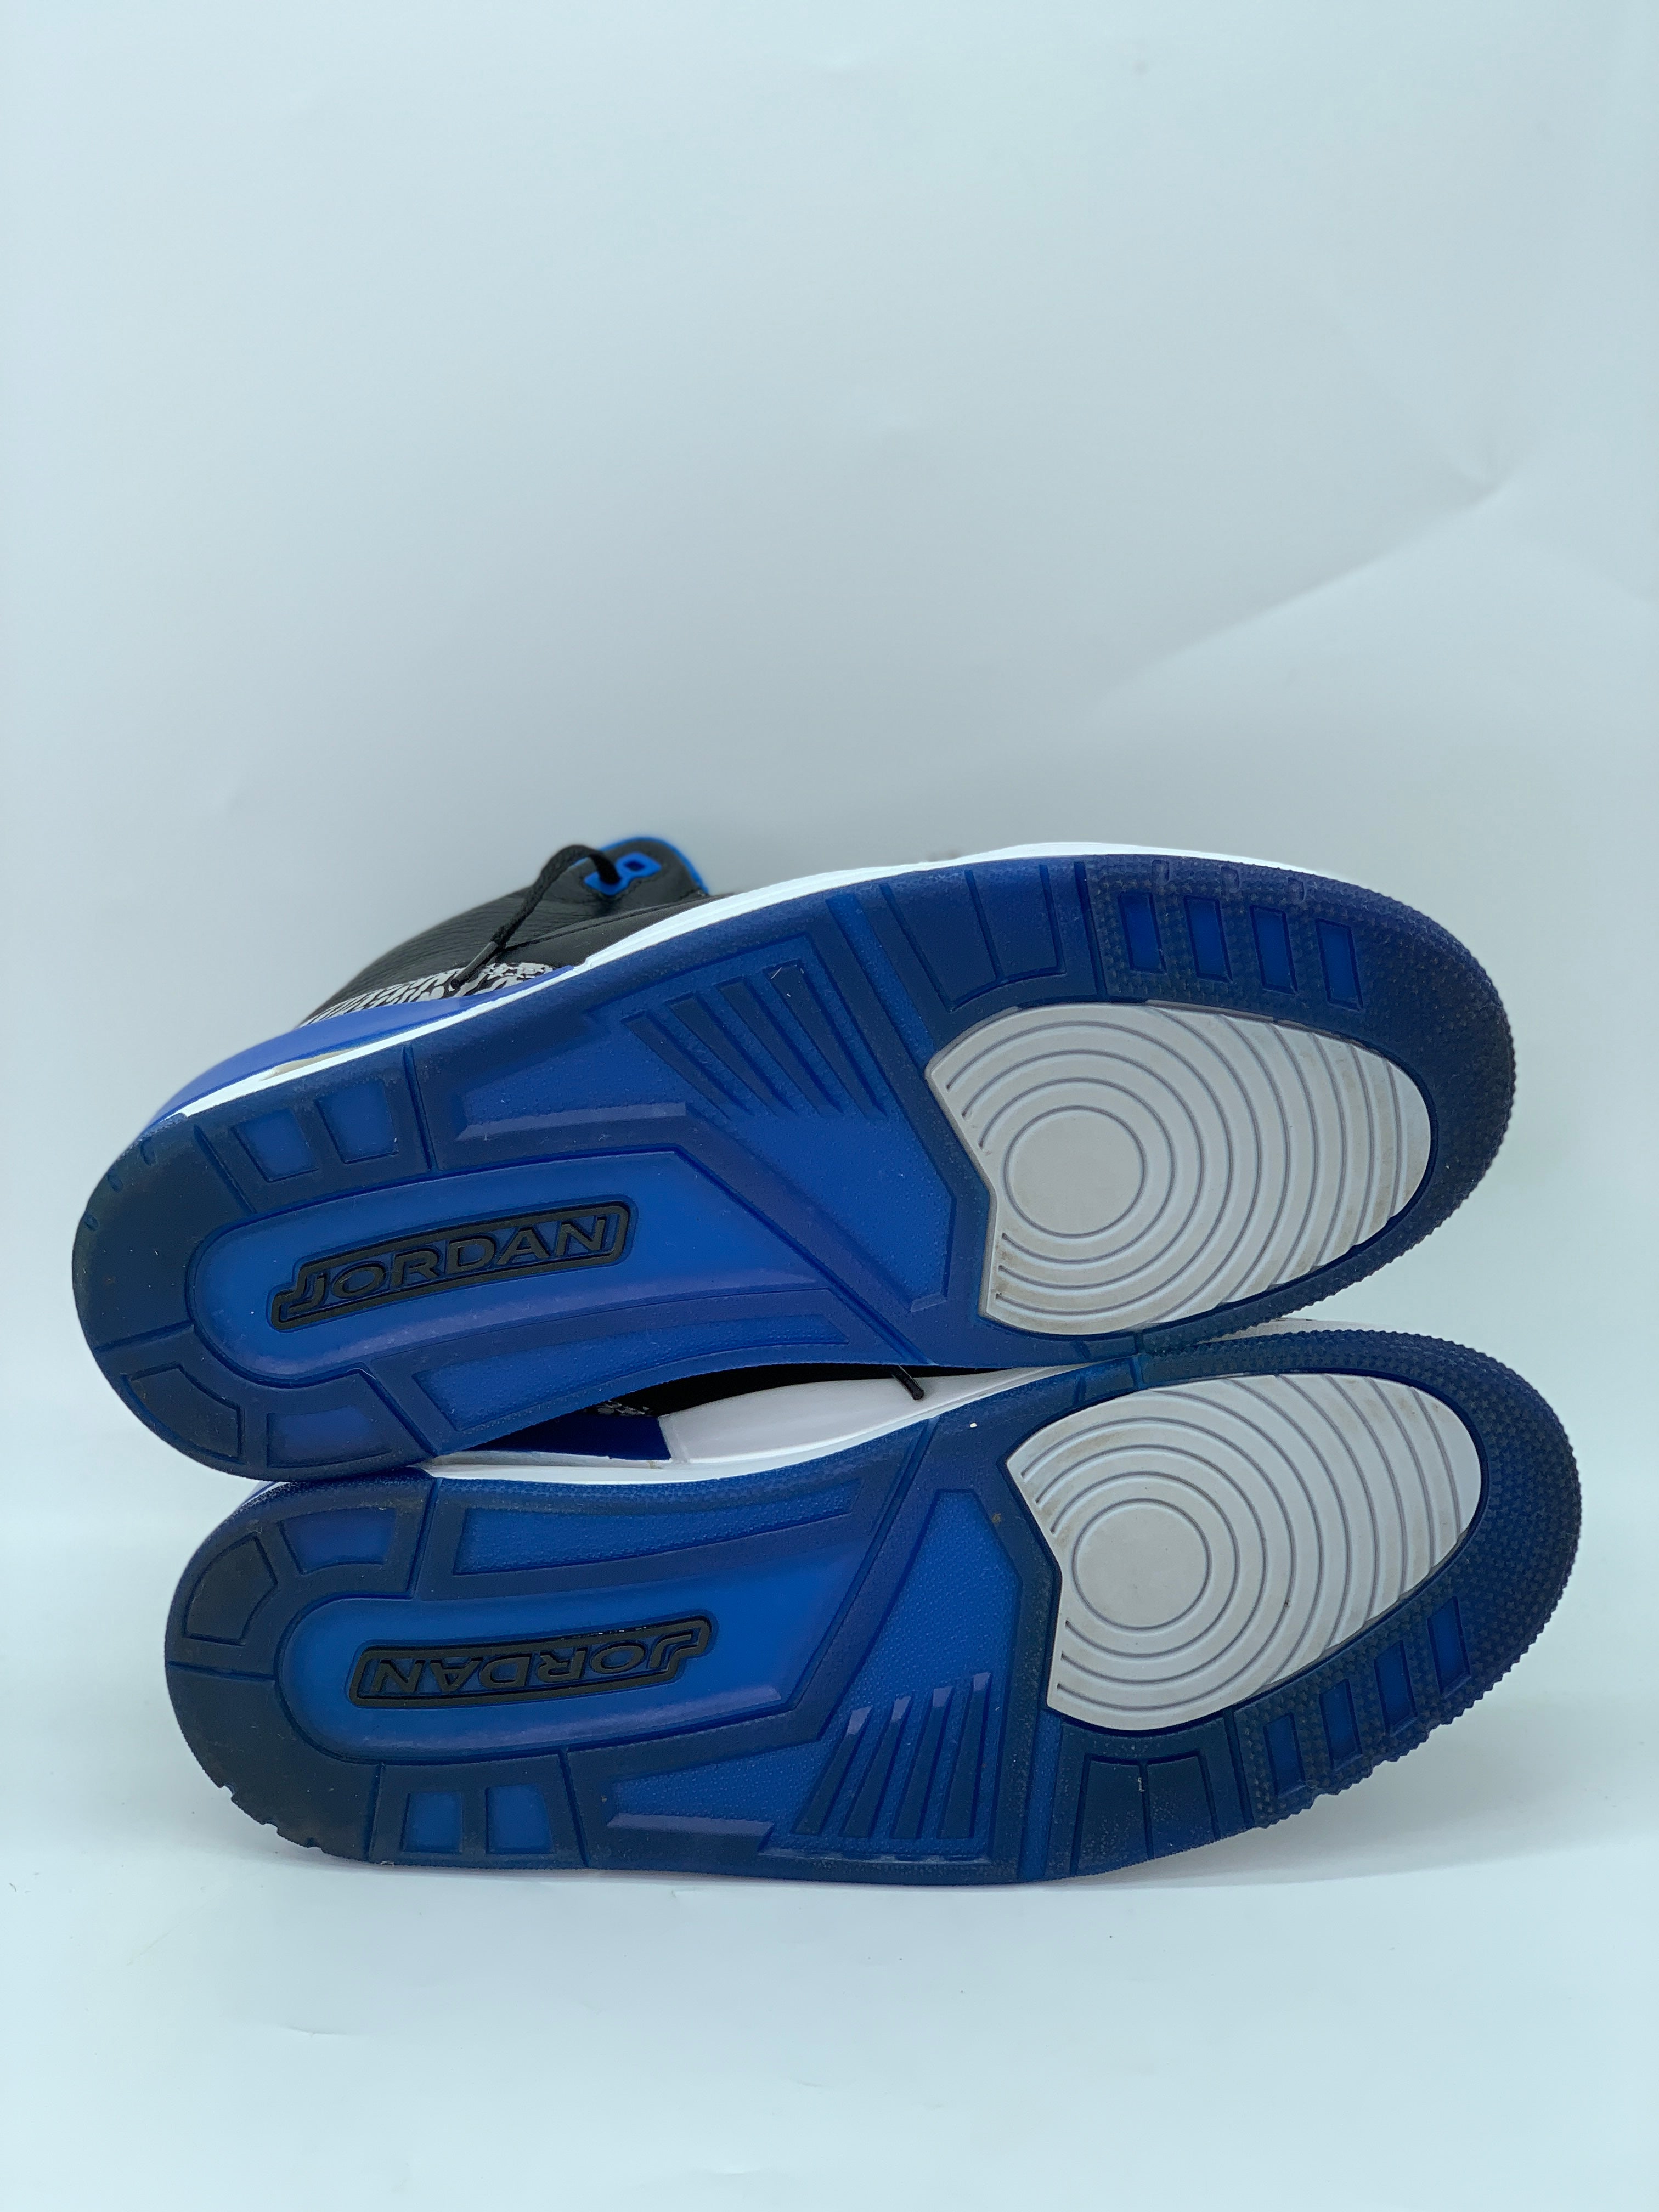 Air Jordan Men's 3 Retro 'Sport Blue' (Pre-Owned)